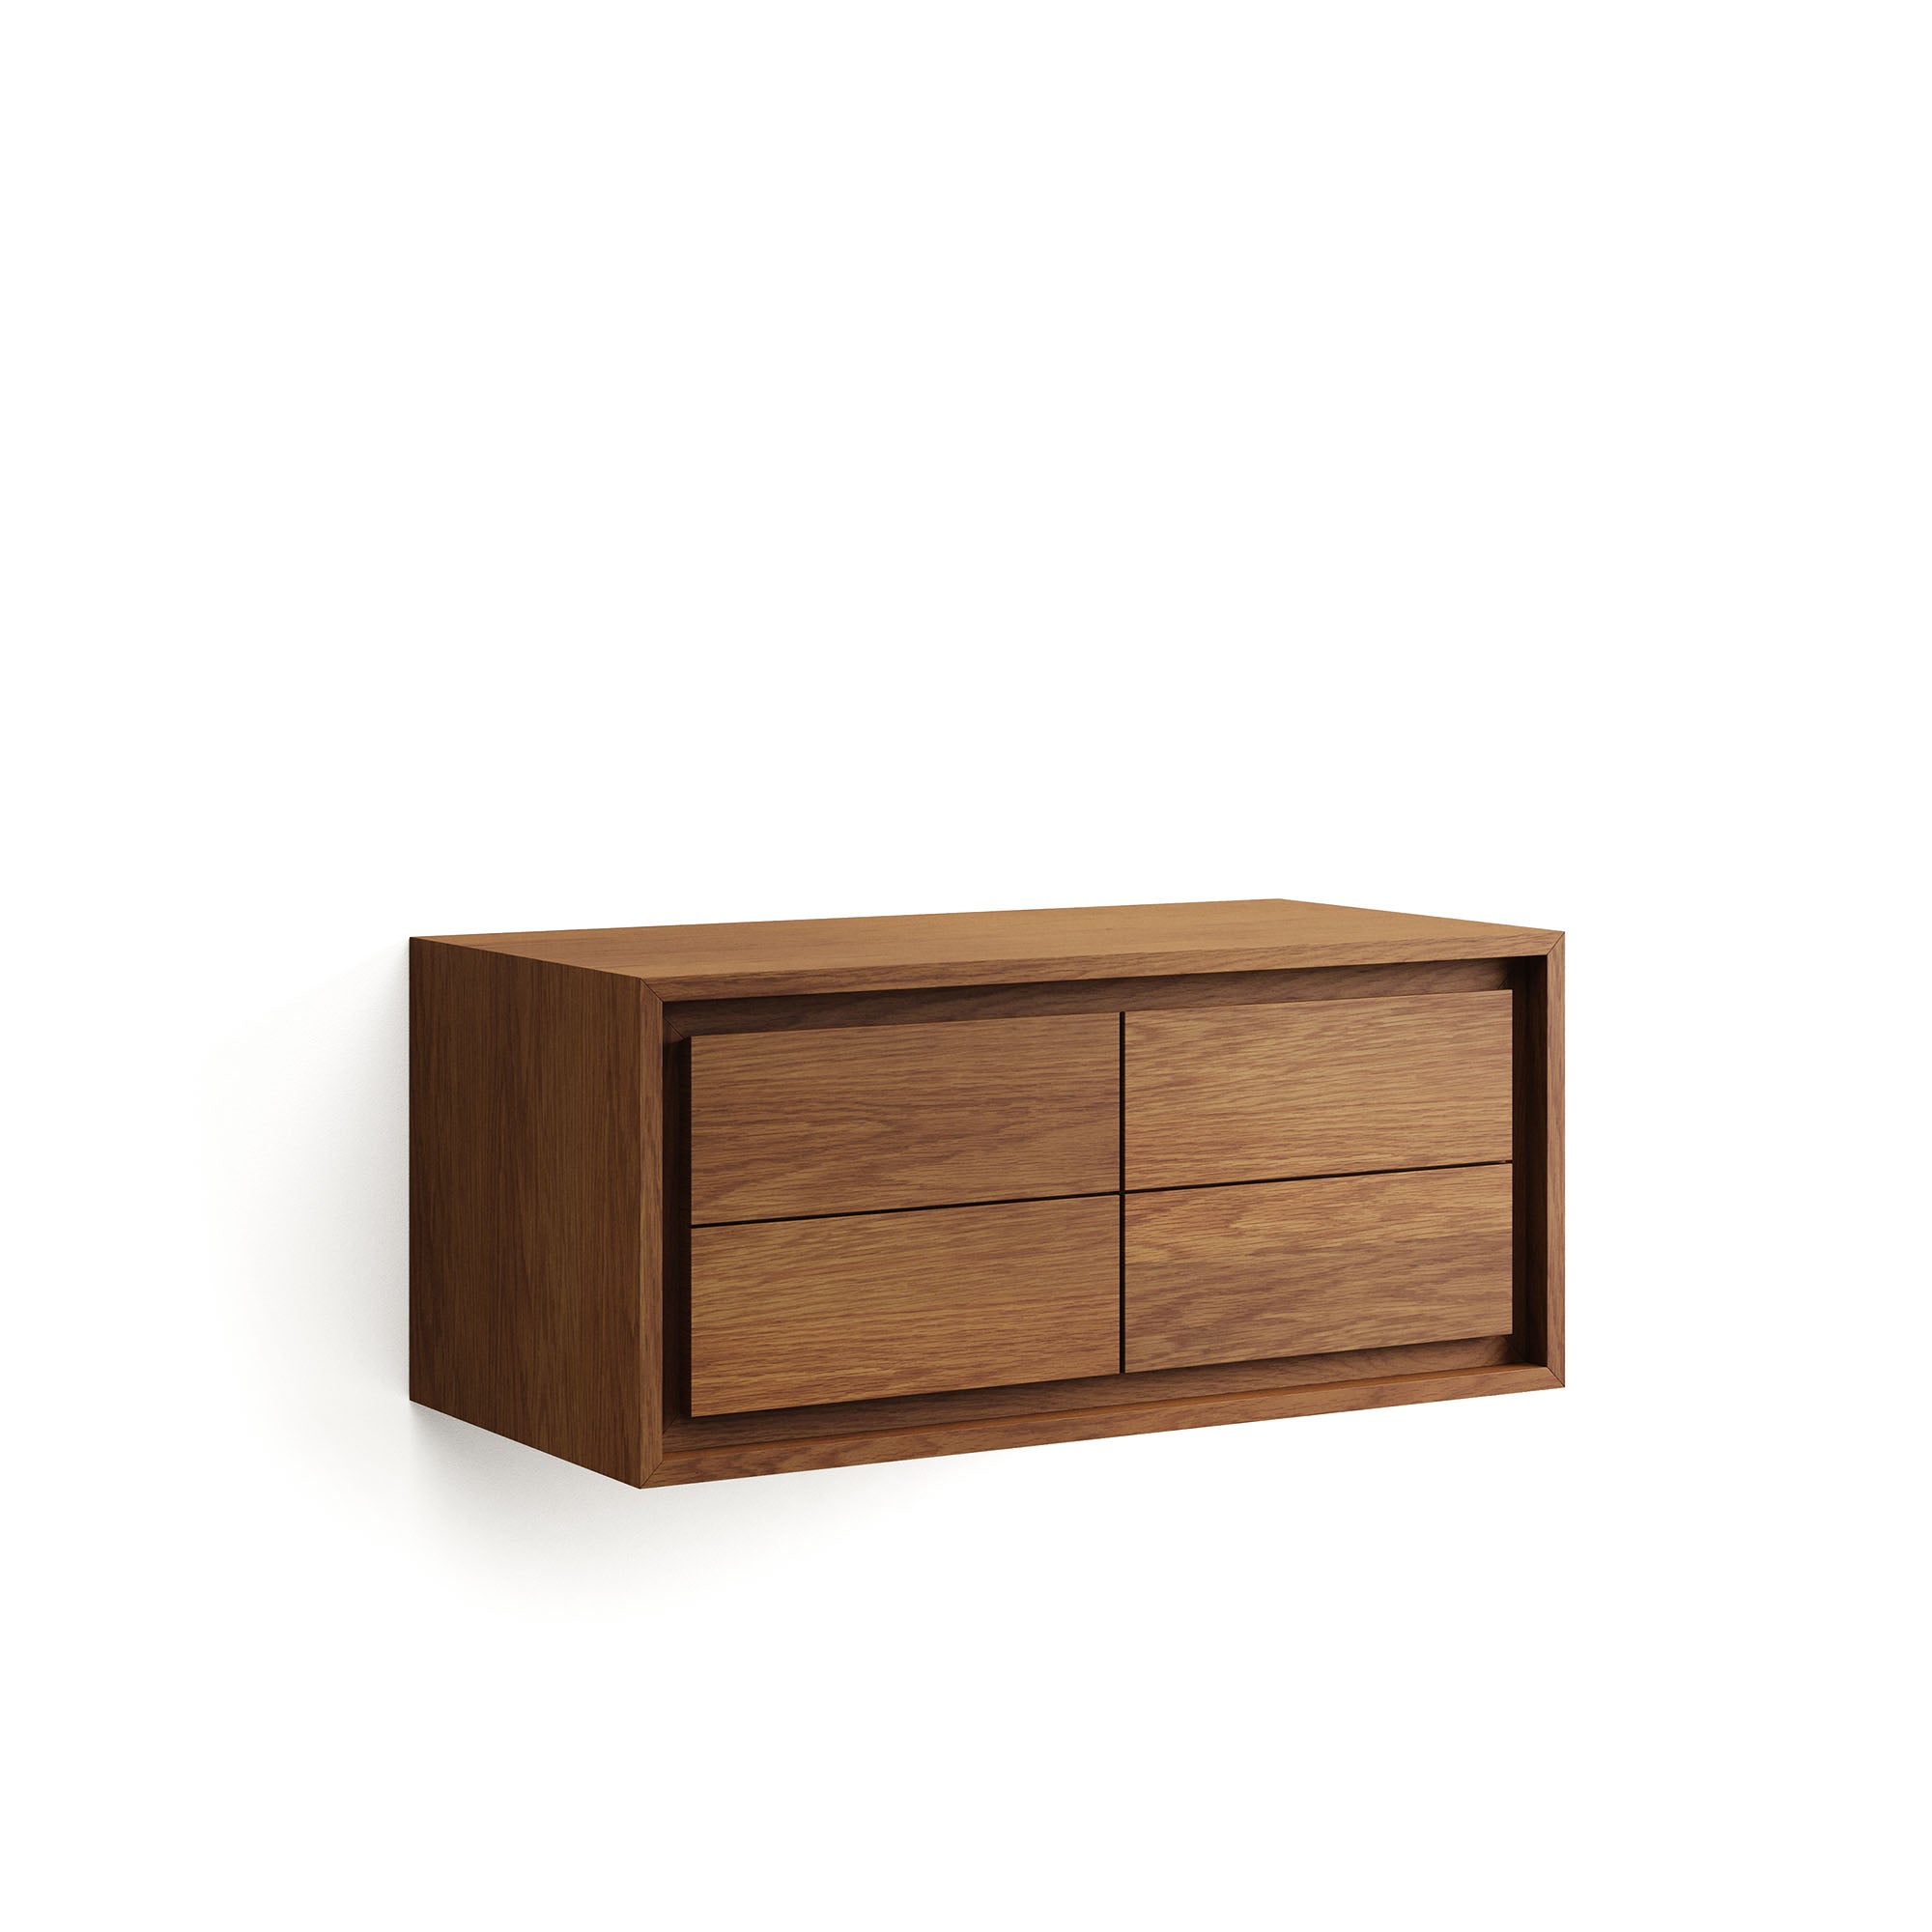 Kenta bathroom furniture in solid teak wood with a walnut finish, 90 x 45 cm